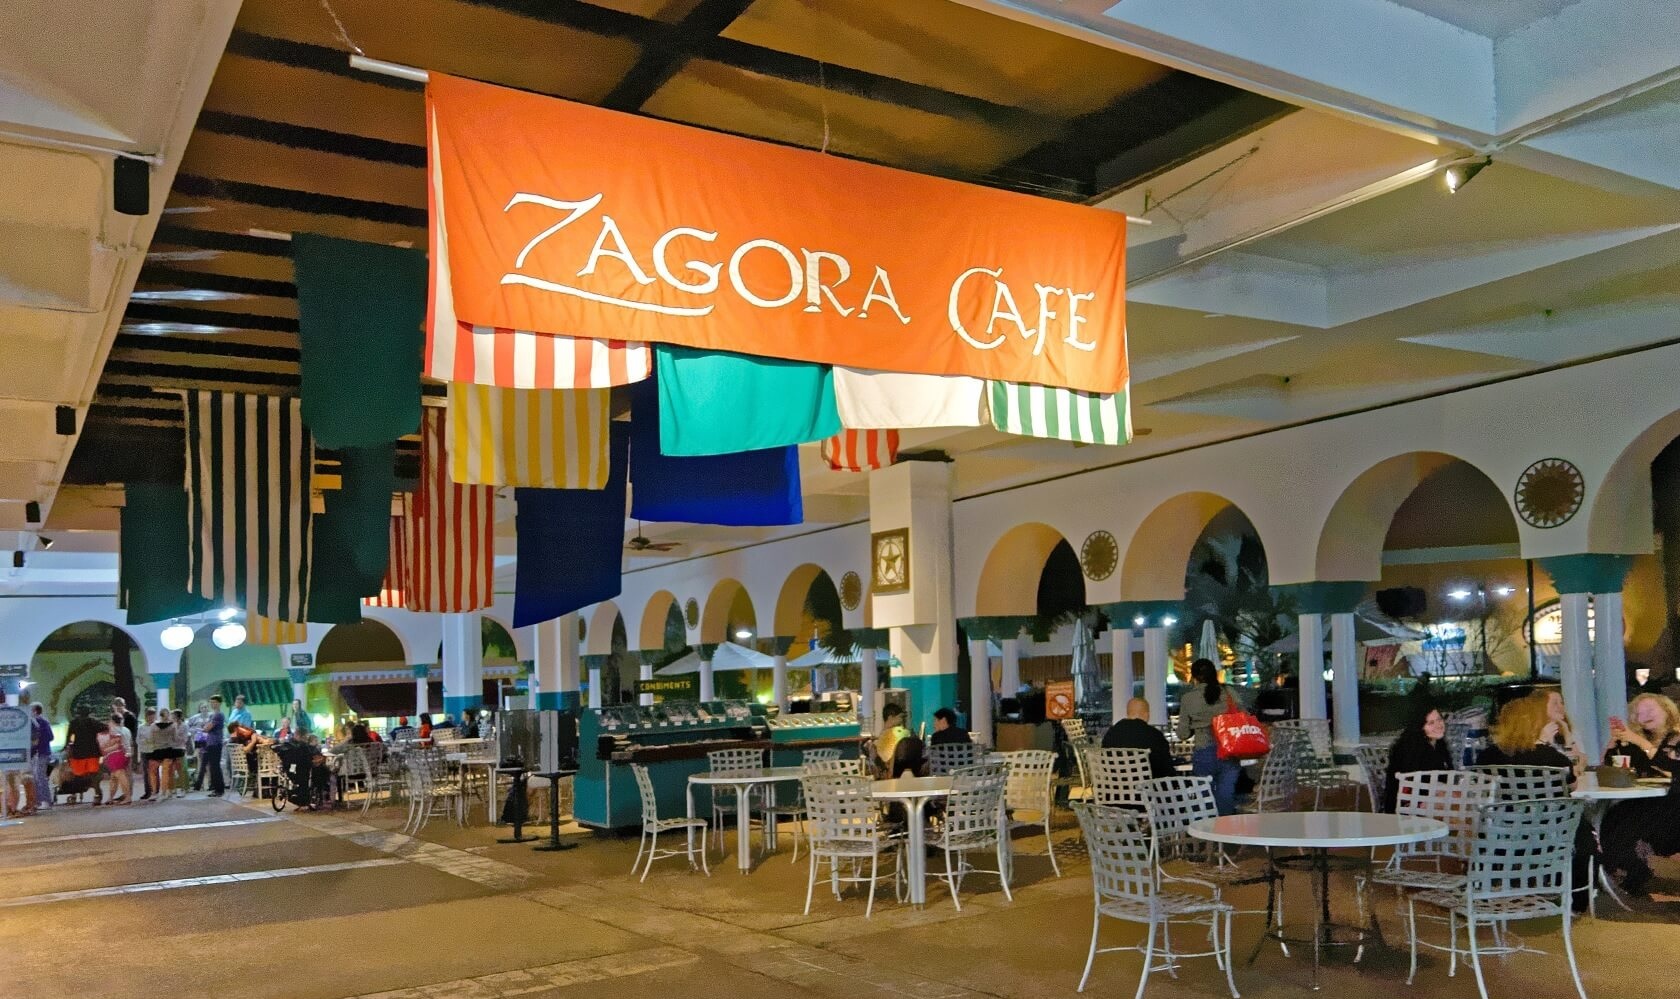 Café Zagora - Restaurante Busch Gardens